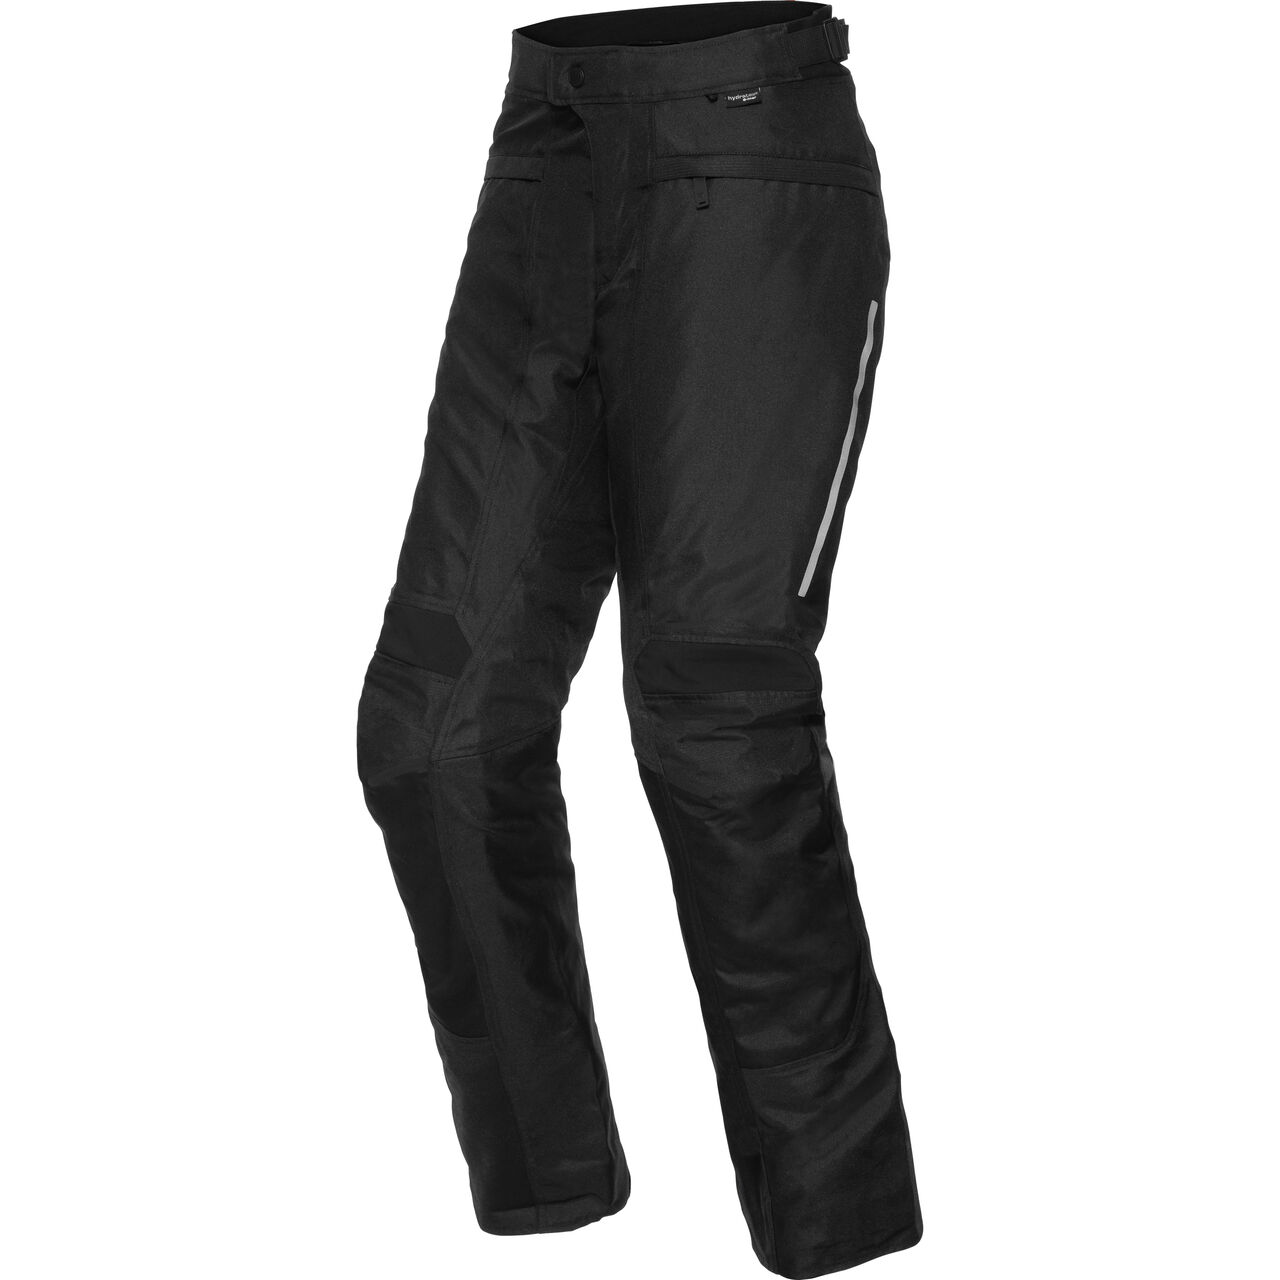 Factor 4 Textile Pants black